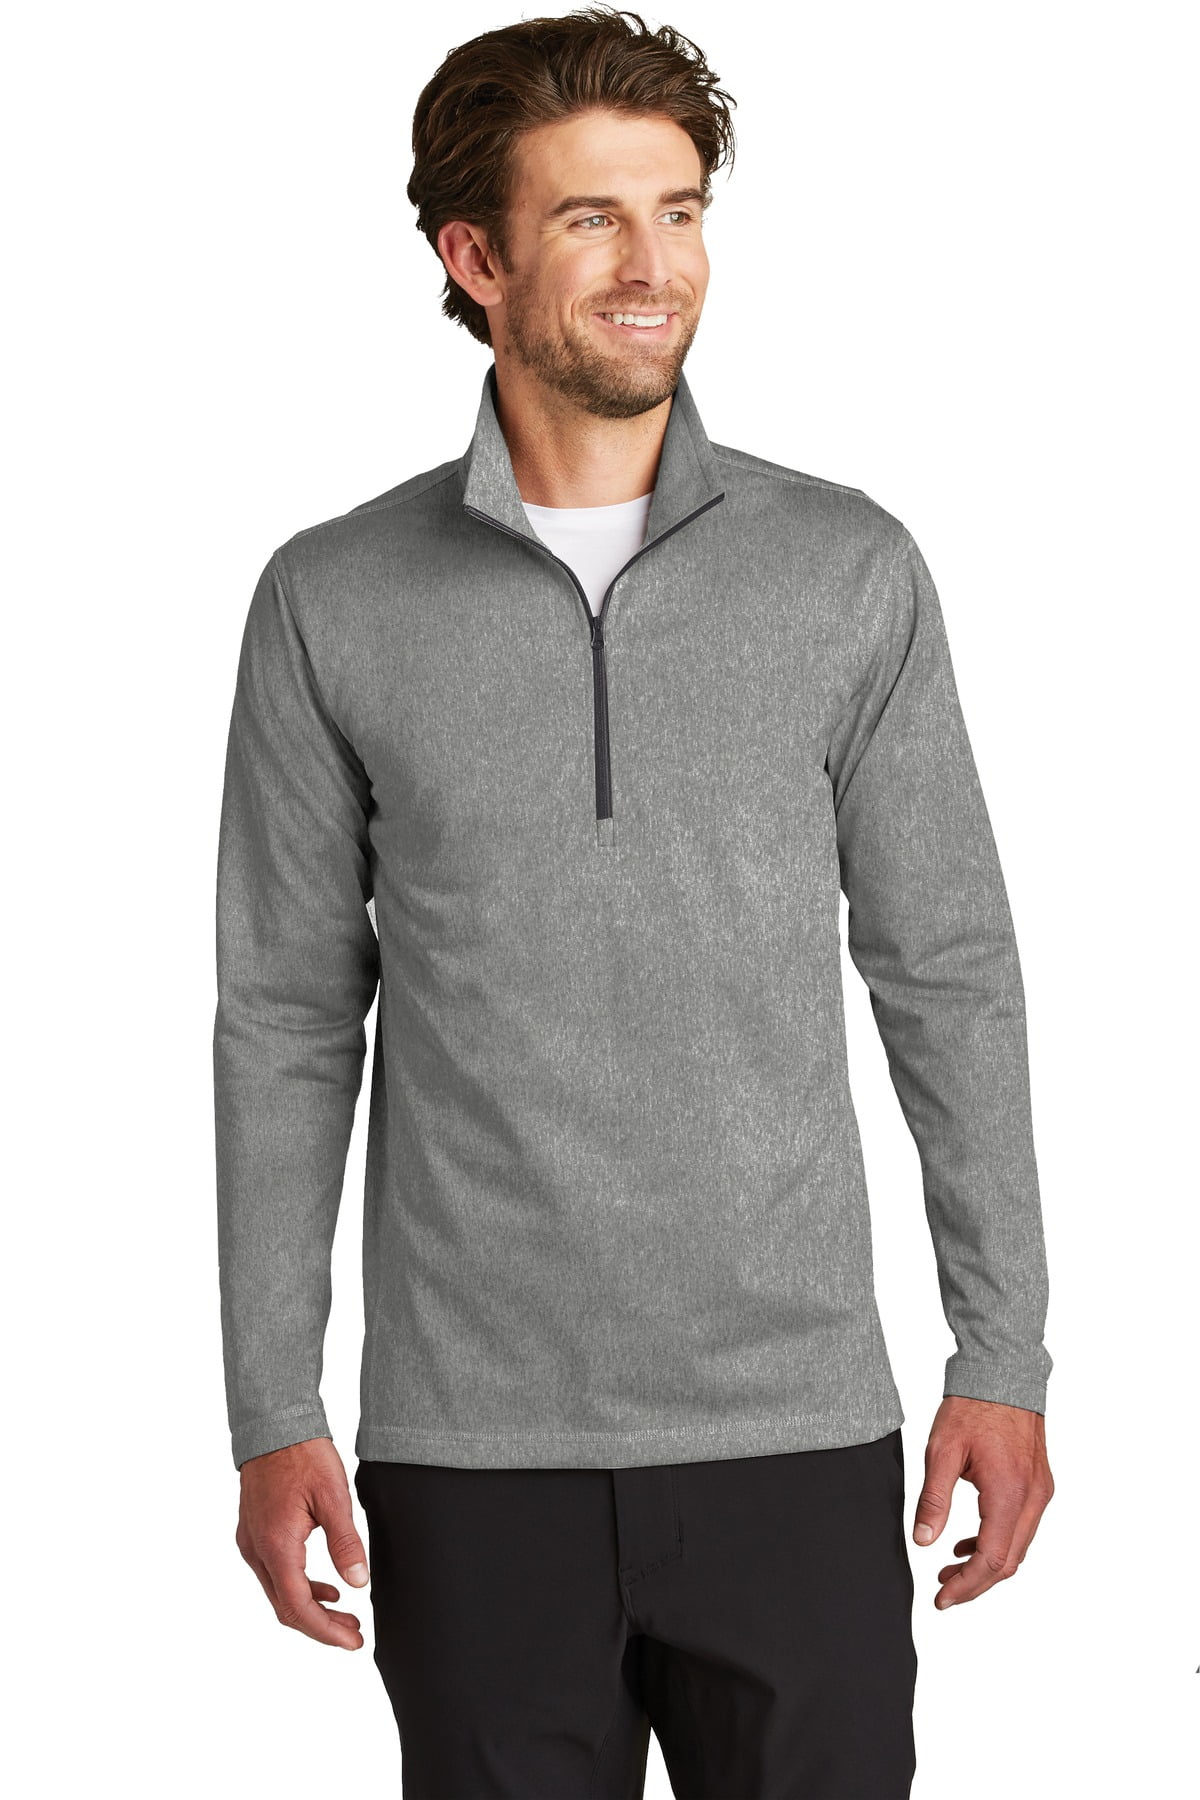 Doe mee Uittrekken virtueel The North Face Men's Sweatshirt Long Sleeve Tech 1/4 Zip Fleece Outerwear  Top, Asphalt Grey, XL - Walmart.com